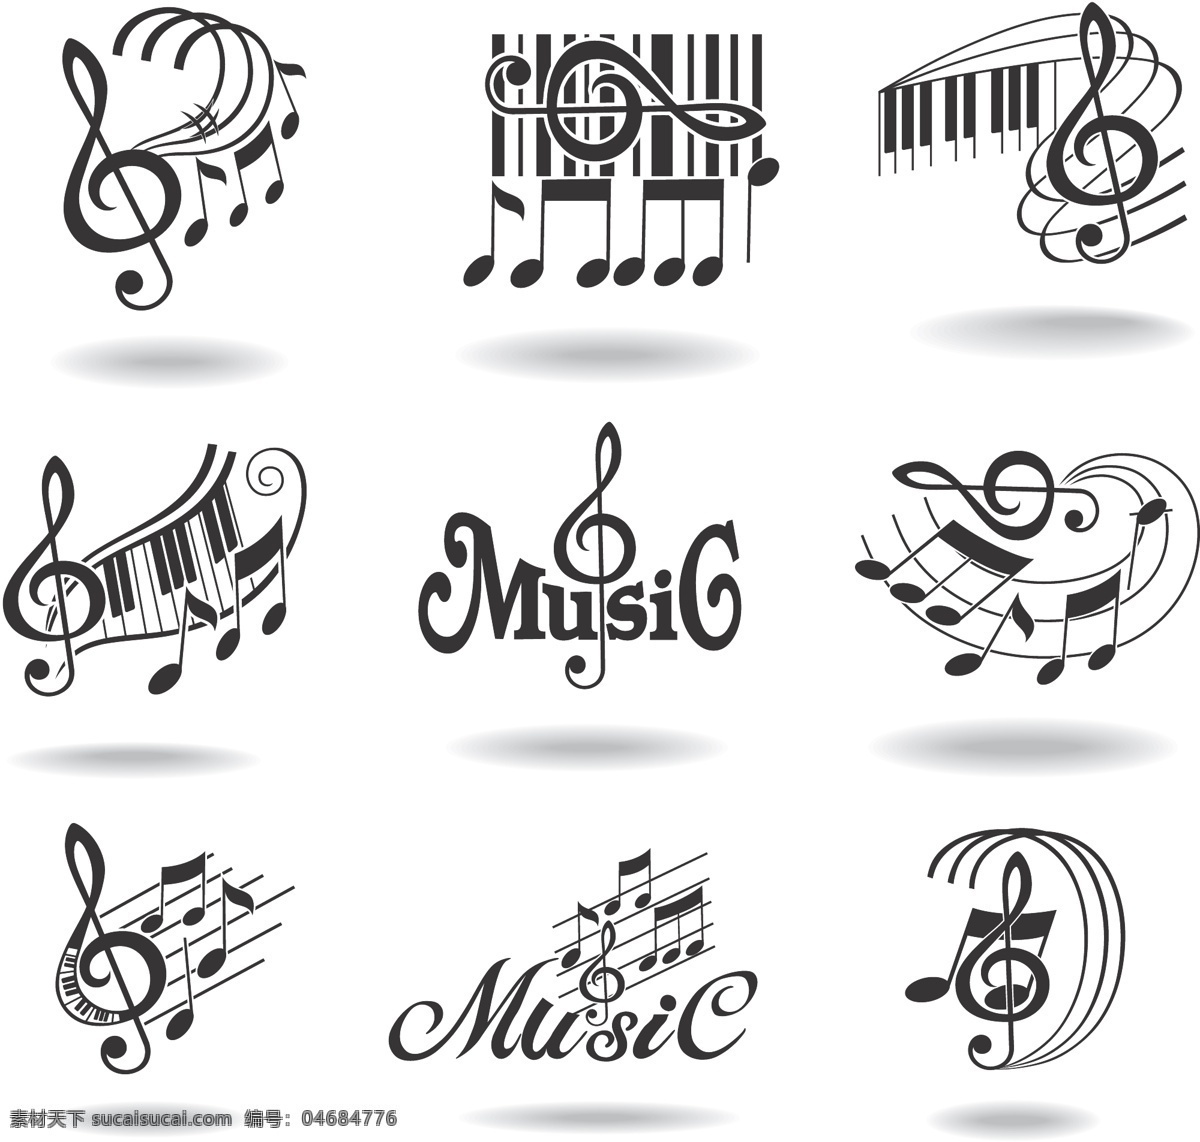 音乐 主题 图标 矢量 music 动感 模板 设计稿 素材元素 五线谱 音乐主题 音符 源文件 矢量图